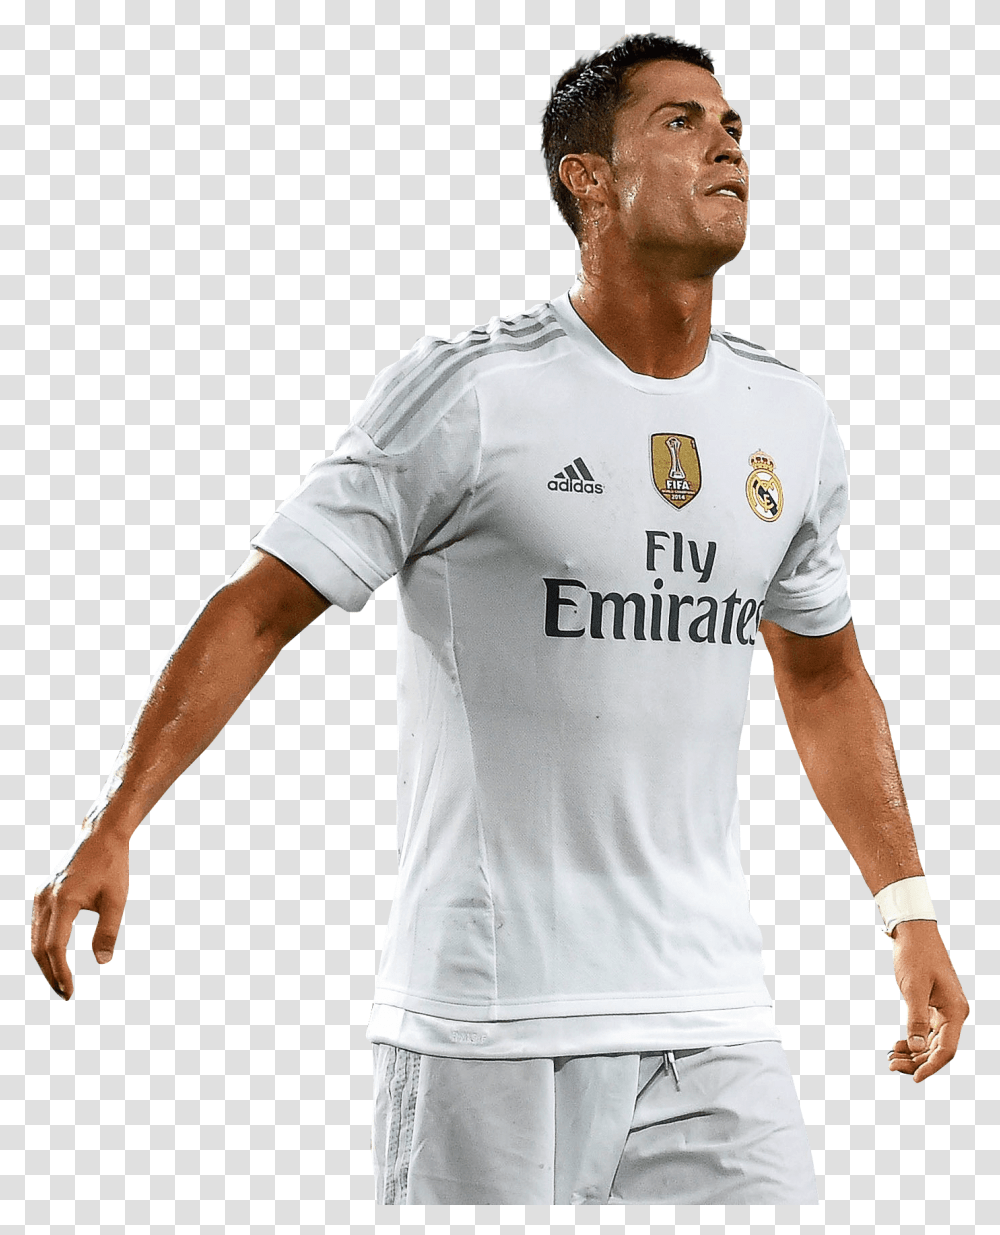 Cristiano Ronaldo Clipart Cristiano Ronaldo 2018, Apparel, Shirt, Person Transparent Png